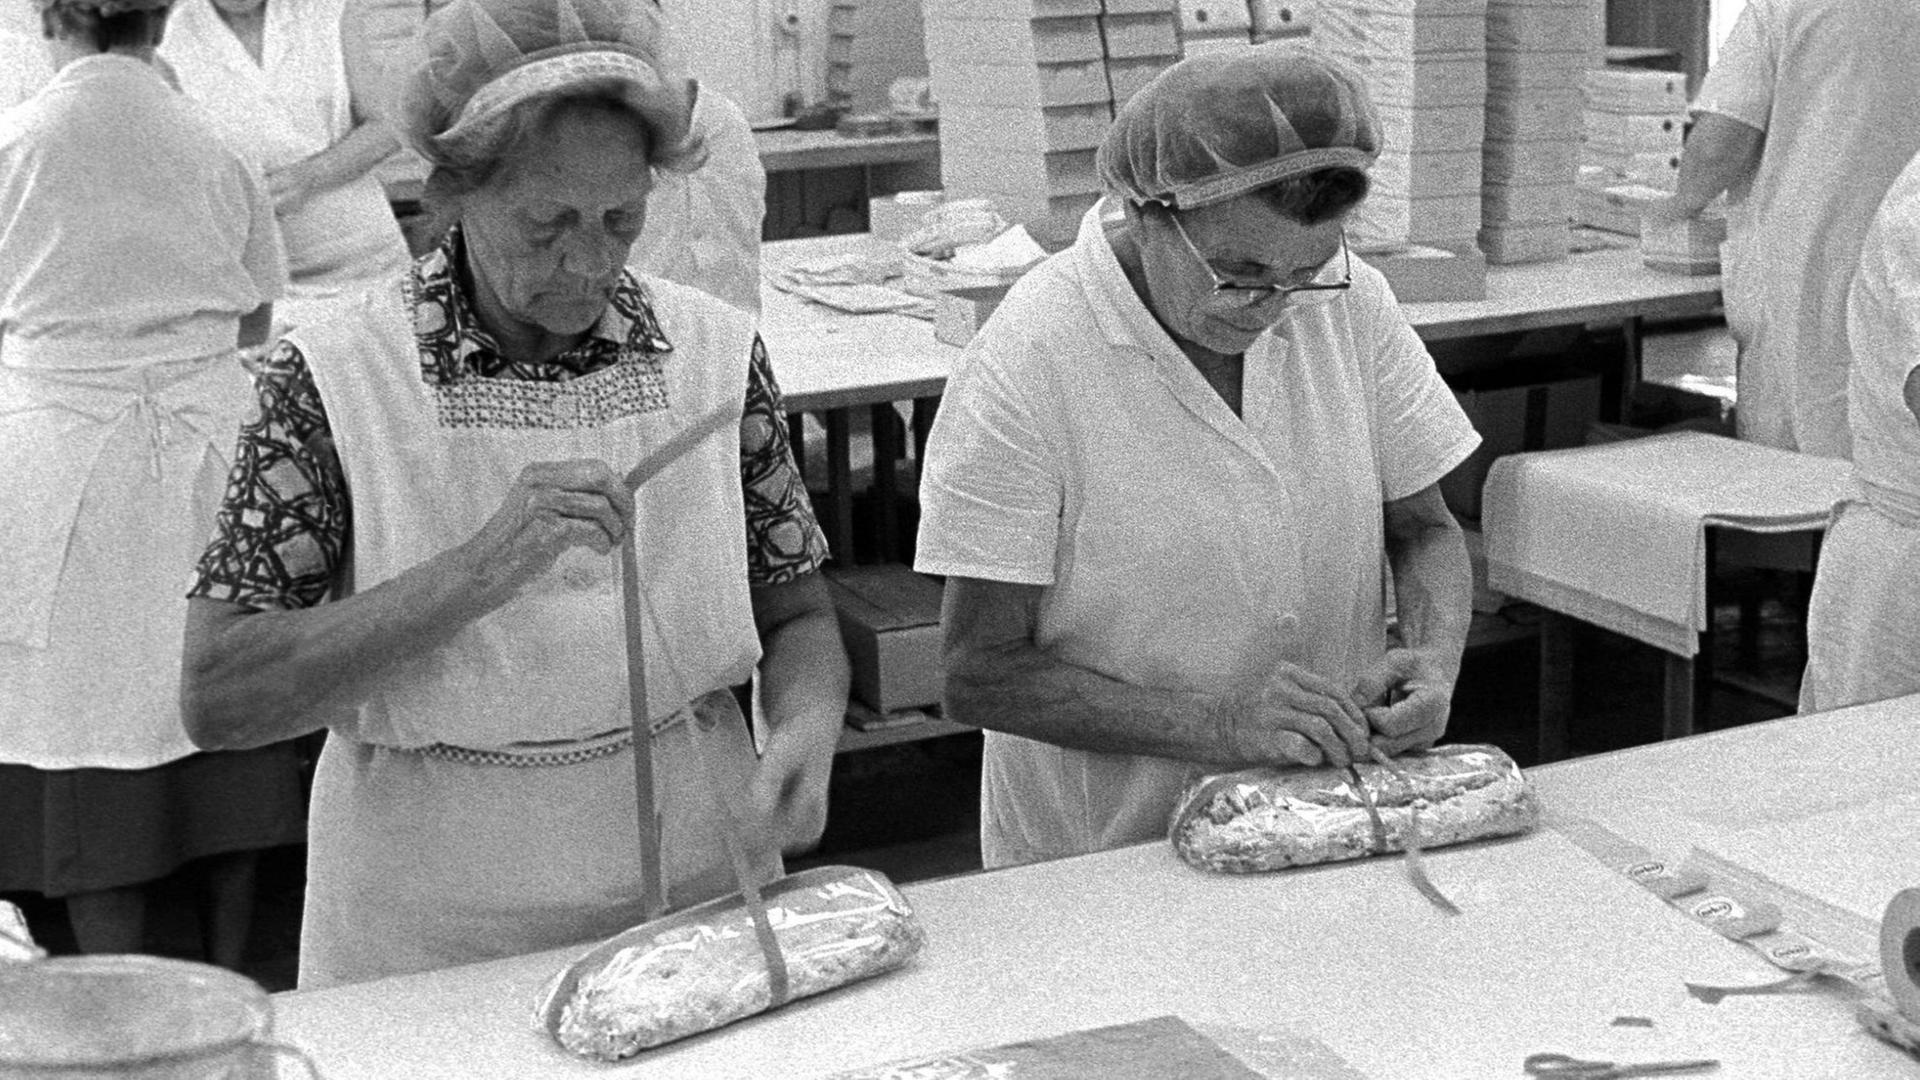 Frauen beim verpacken von Christstollen in einer Dresdener Bäckerei